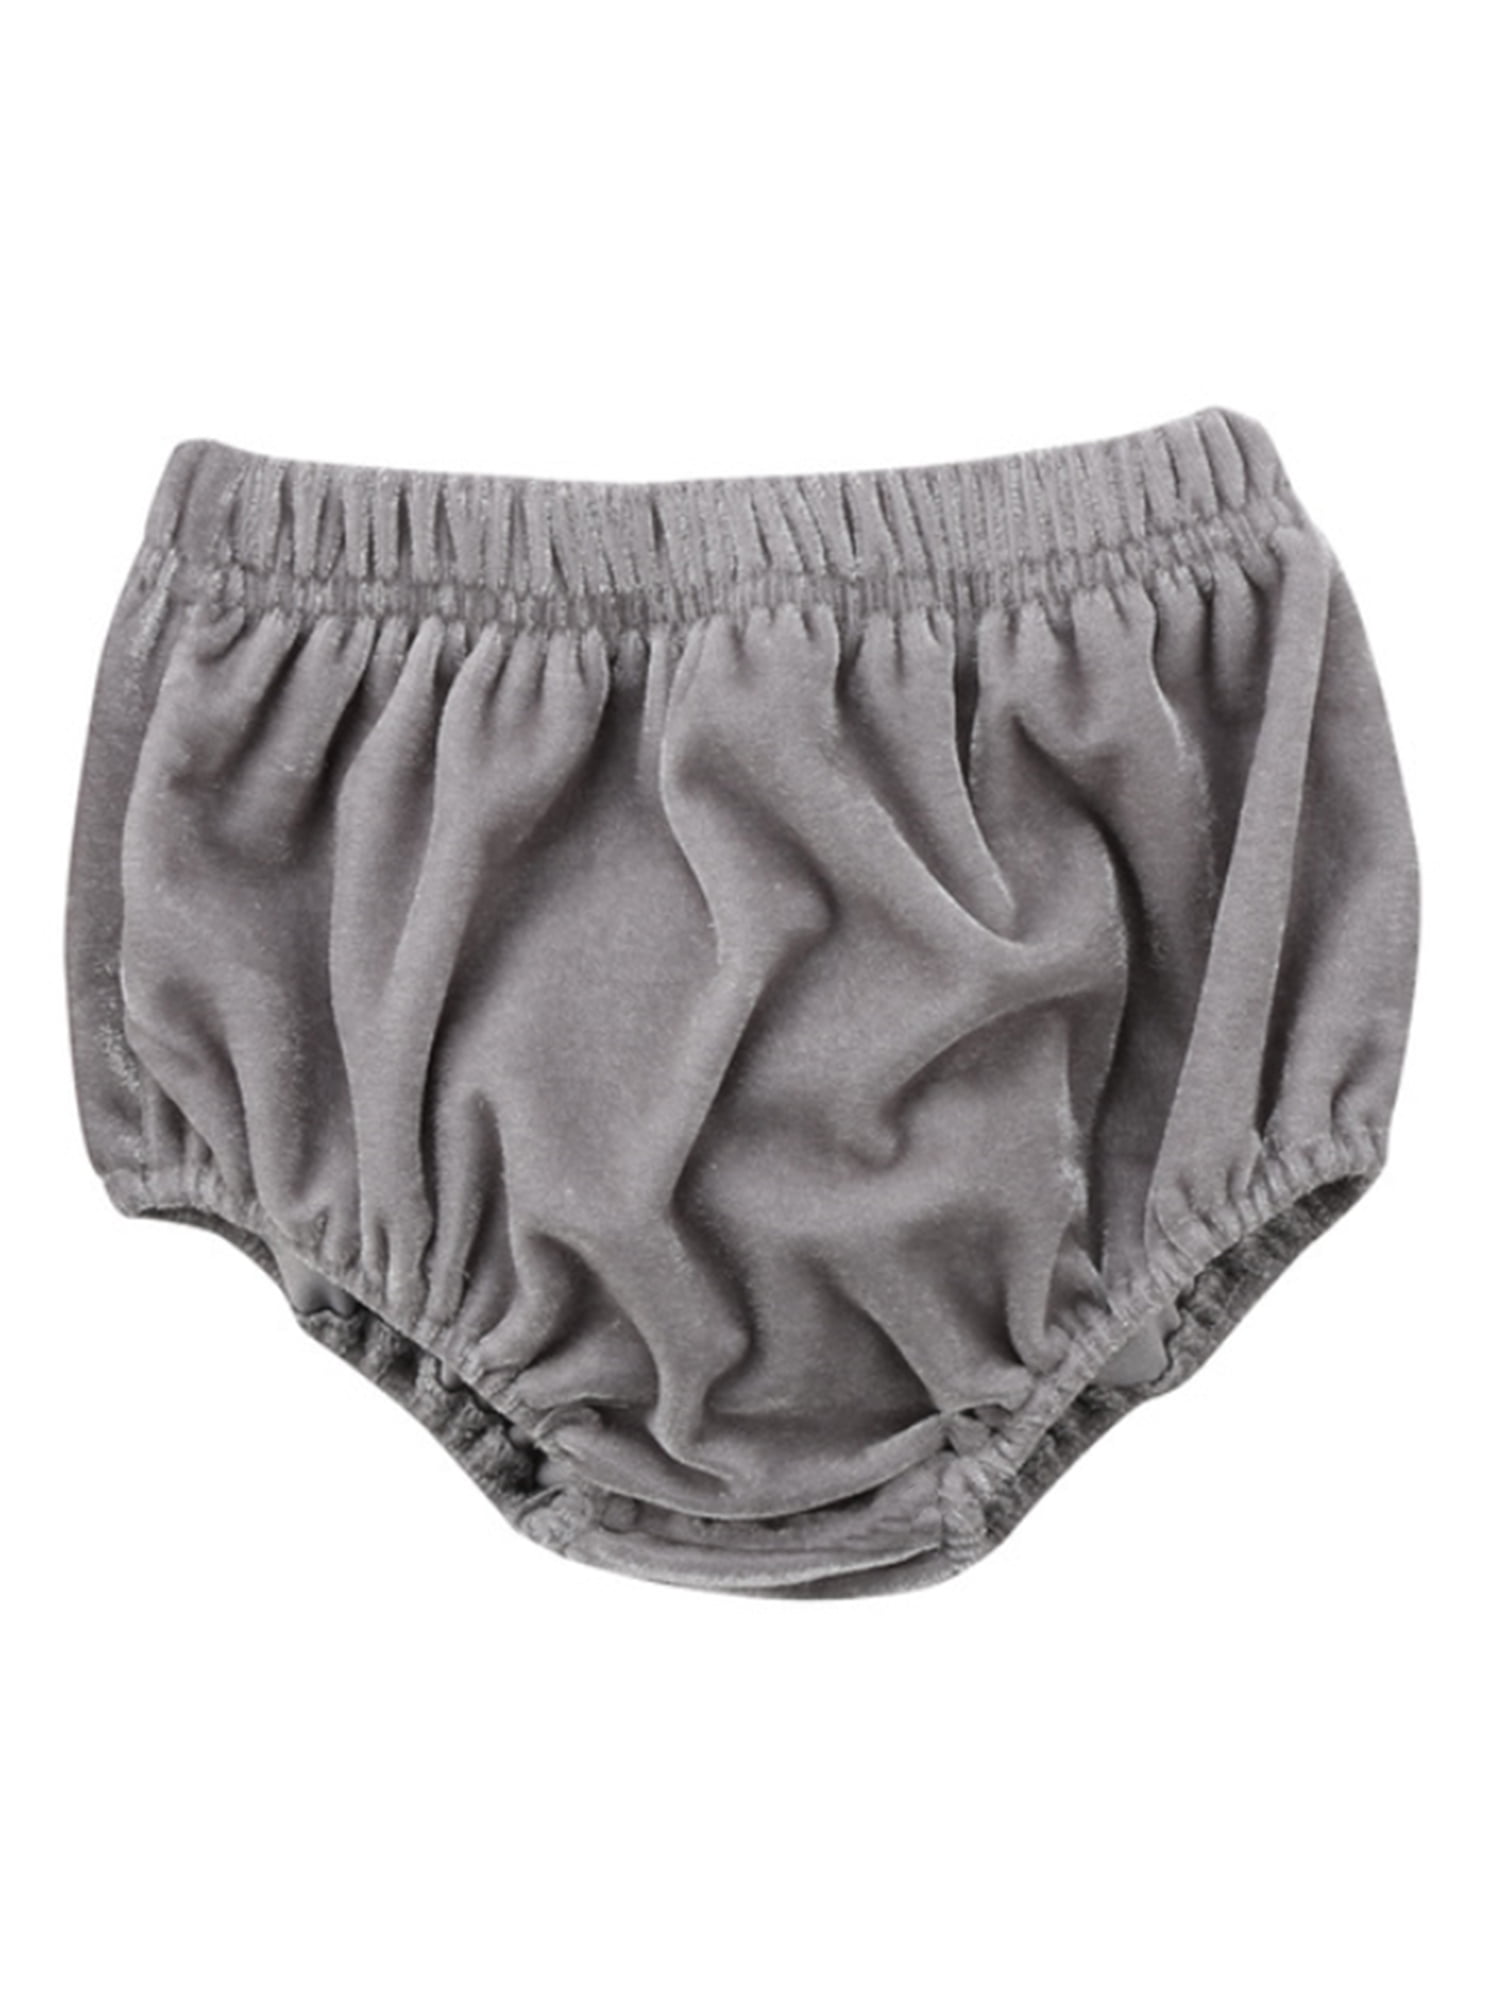 stylesilove Infant Baby Girl Velvet Bloomer Shorts (80/6-12 Months, Grey) 